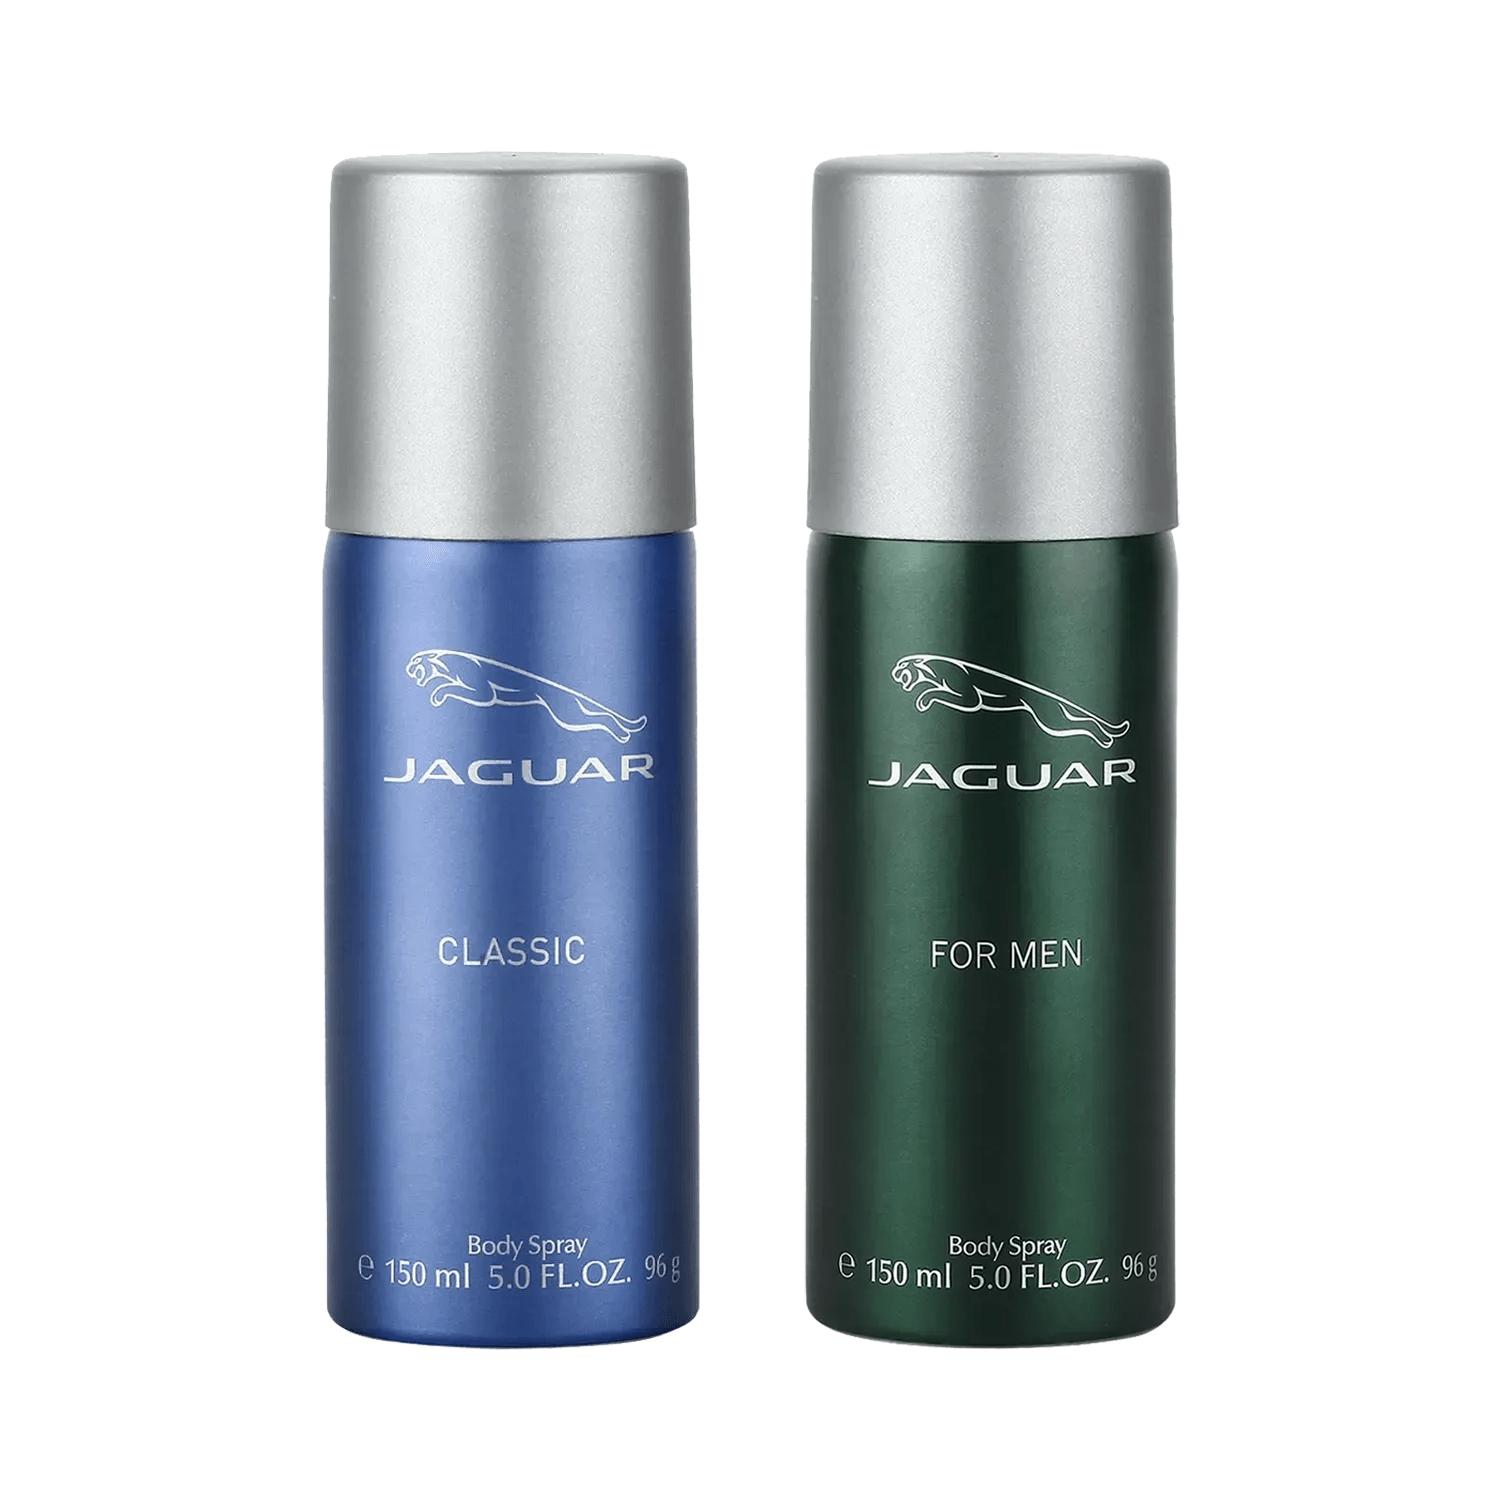 Jaguar | Jaguar Deodorant For Men + Deodorant (Pack of 2) Combo